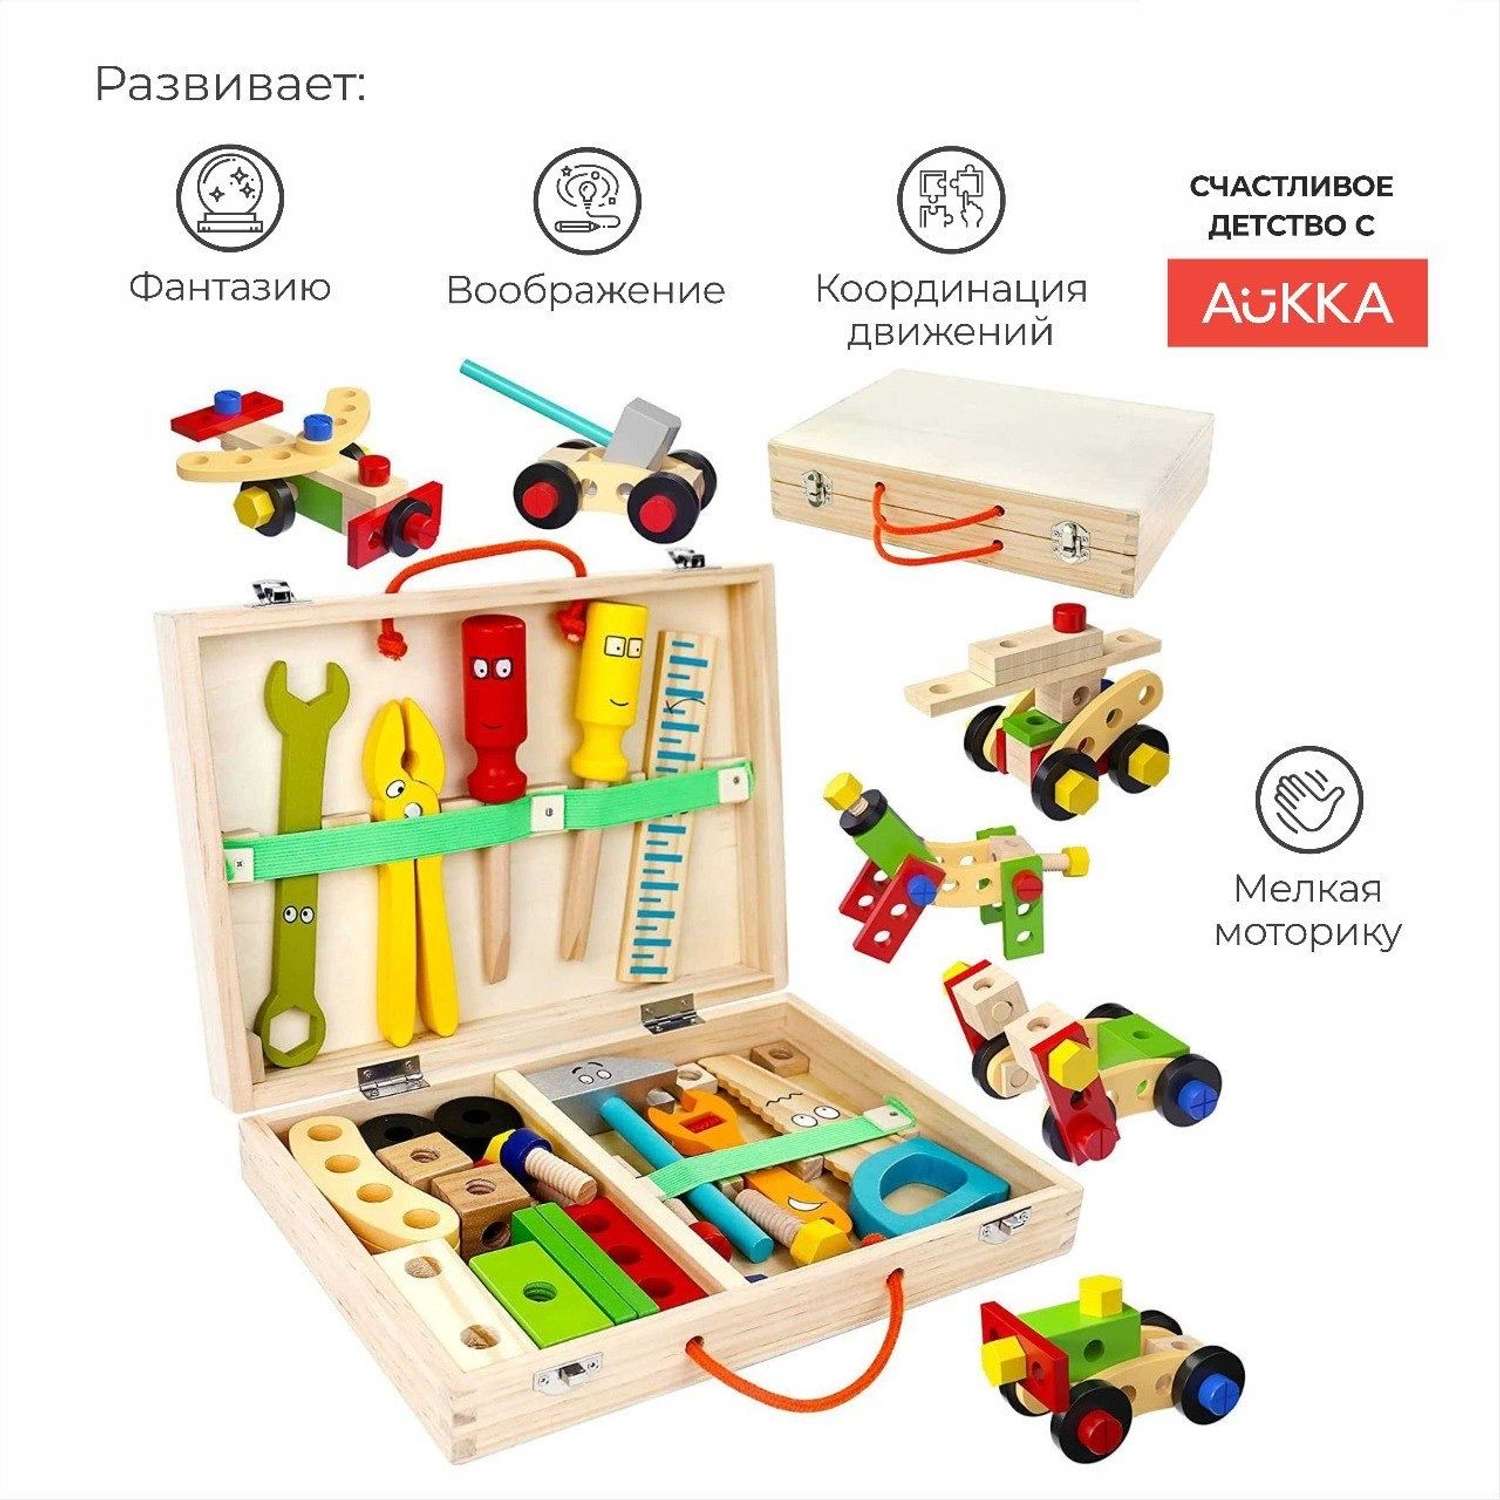 Деревянный конструктор AUKKA Игрушечные строительные иструменты для мальчика - фото 4